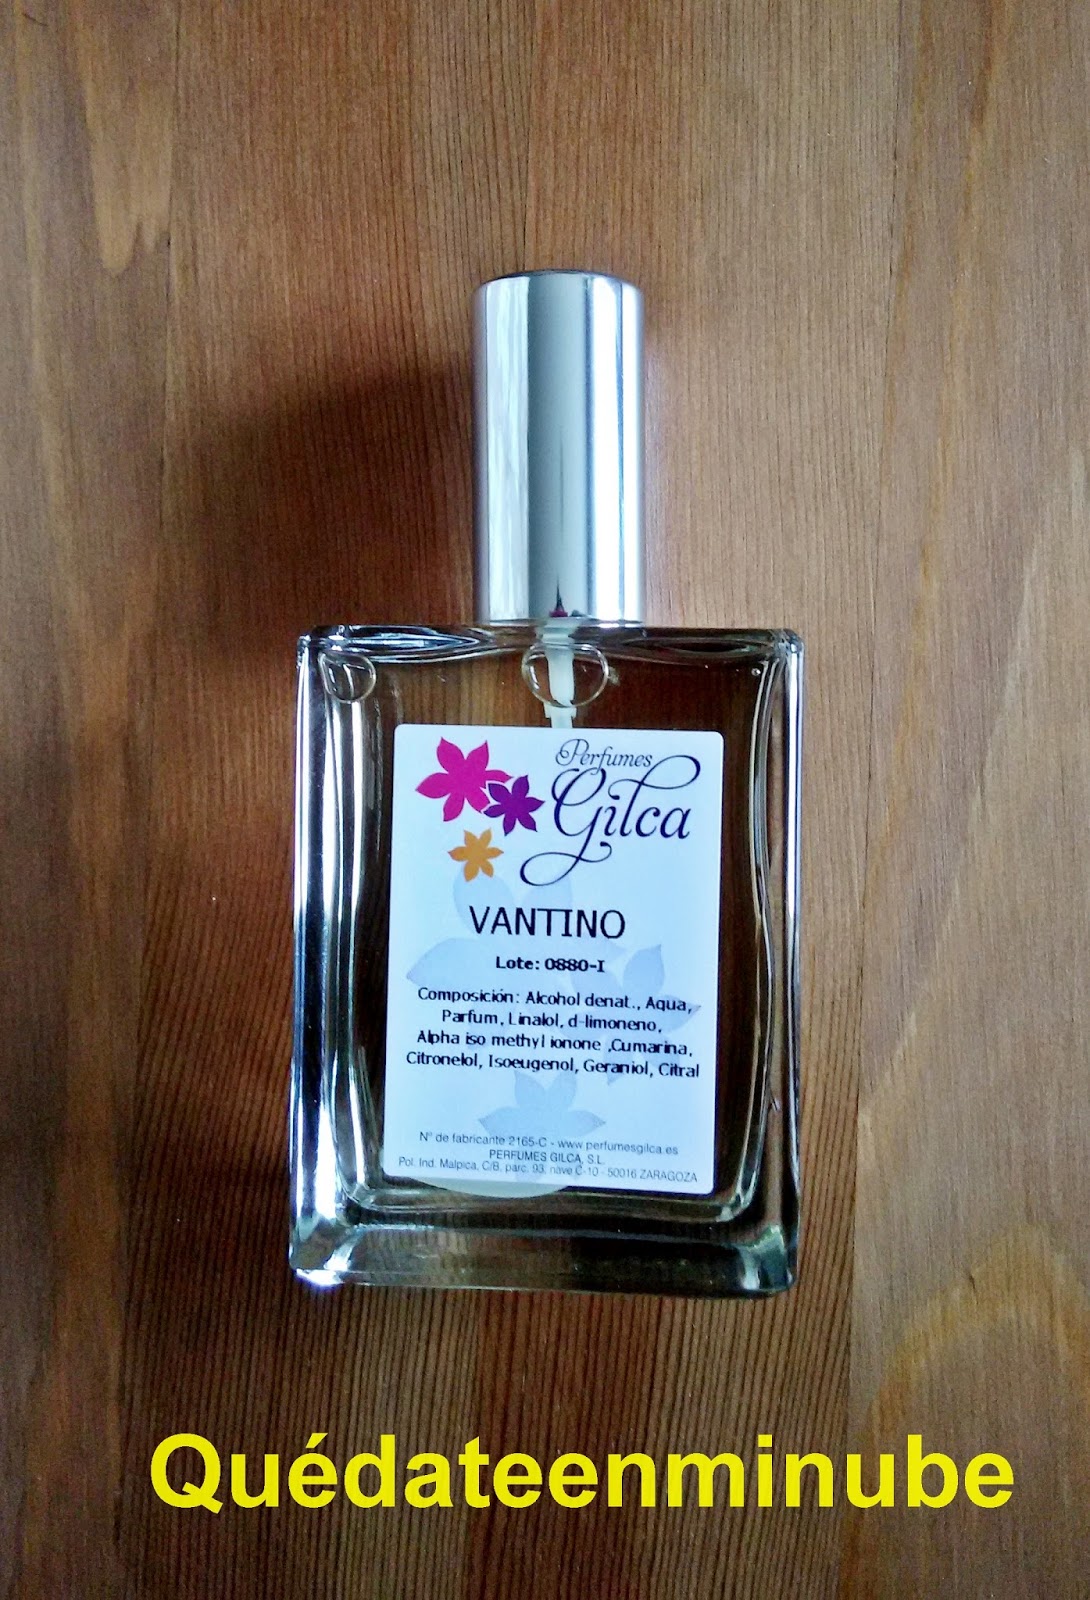 Perfumes gilca - ACIDO CITRICO 1 KG.